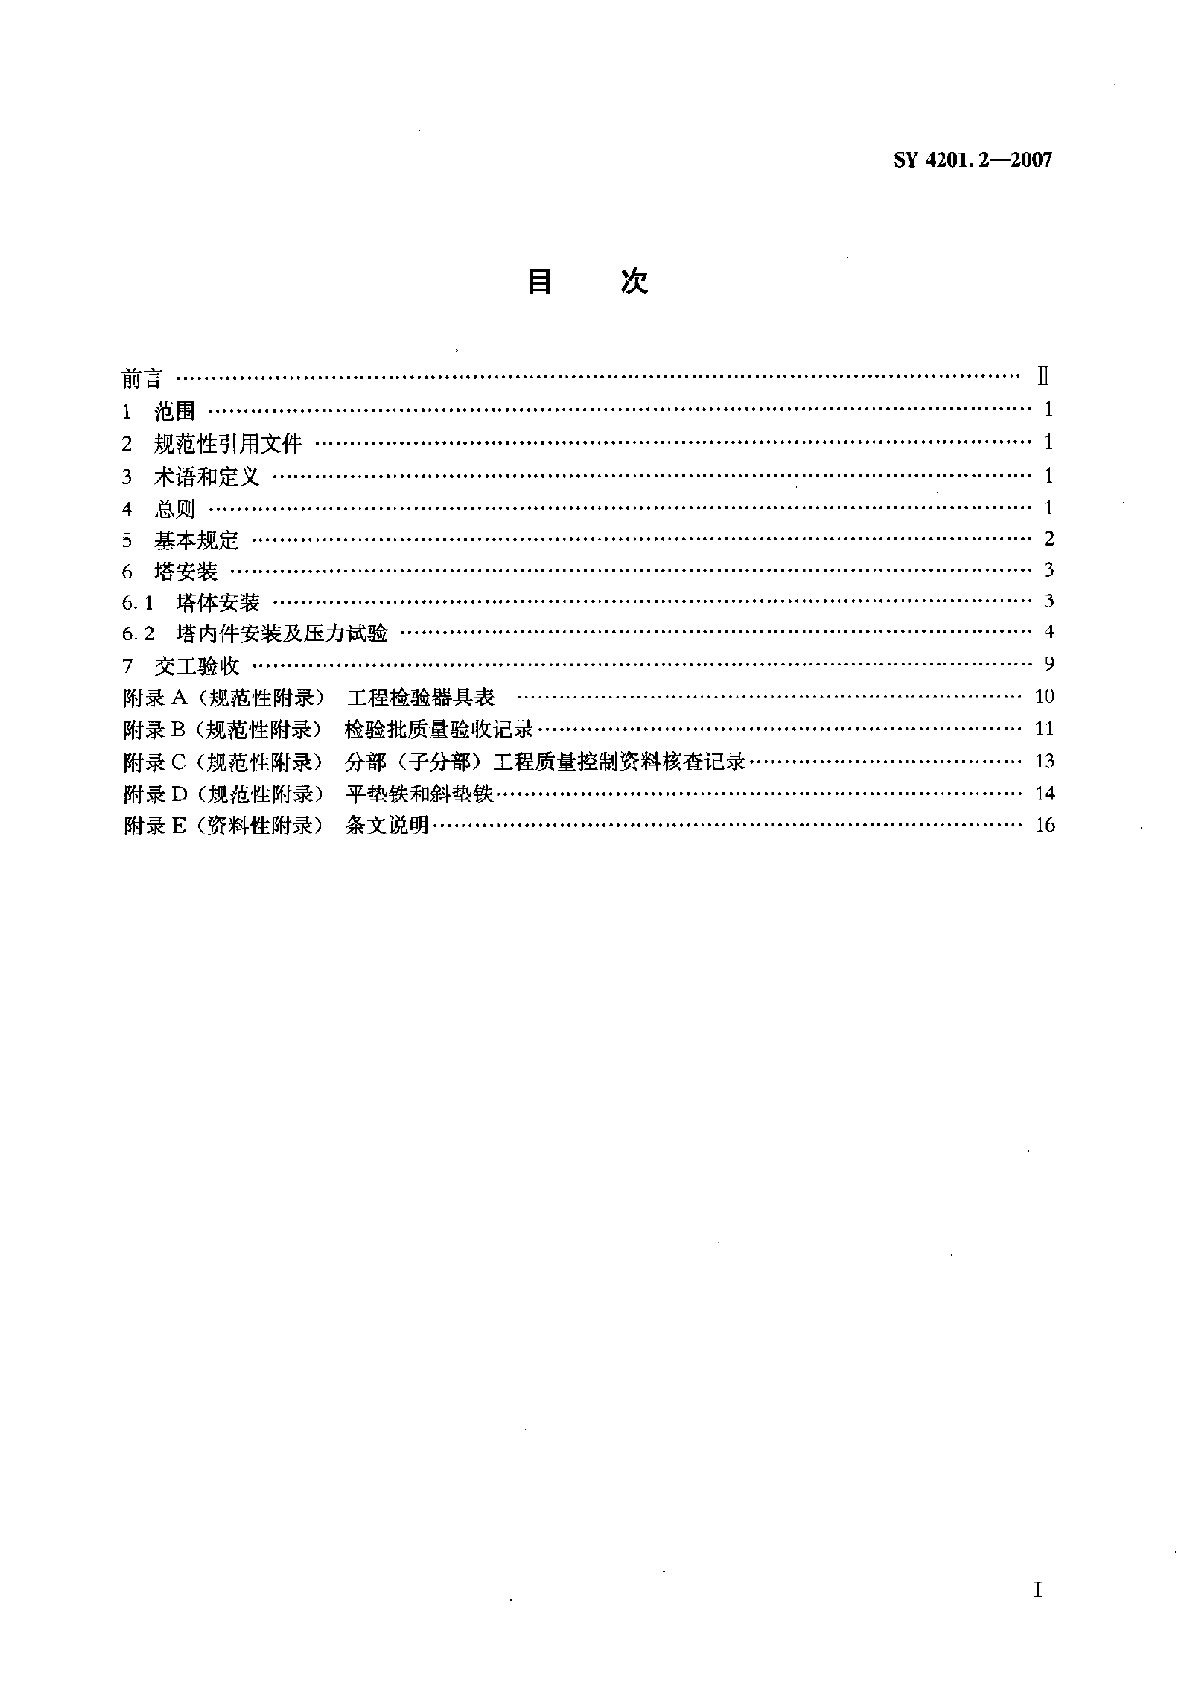 2塔类设备SY4201.2-2007.pdf-图二